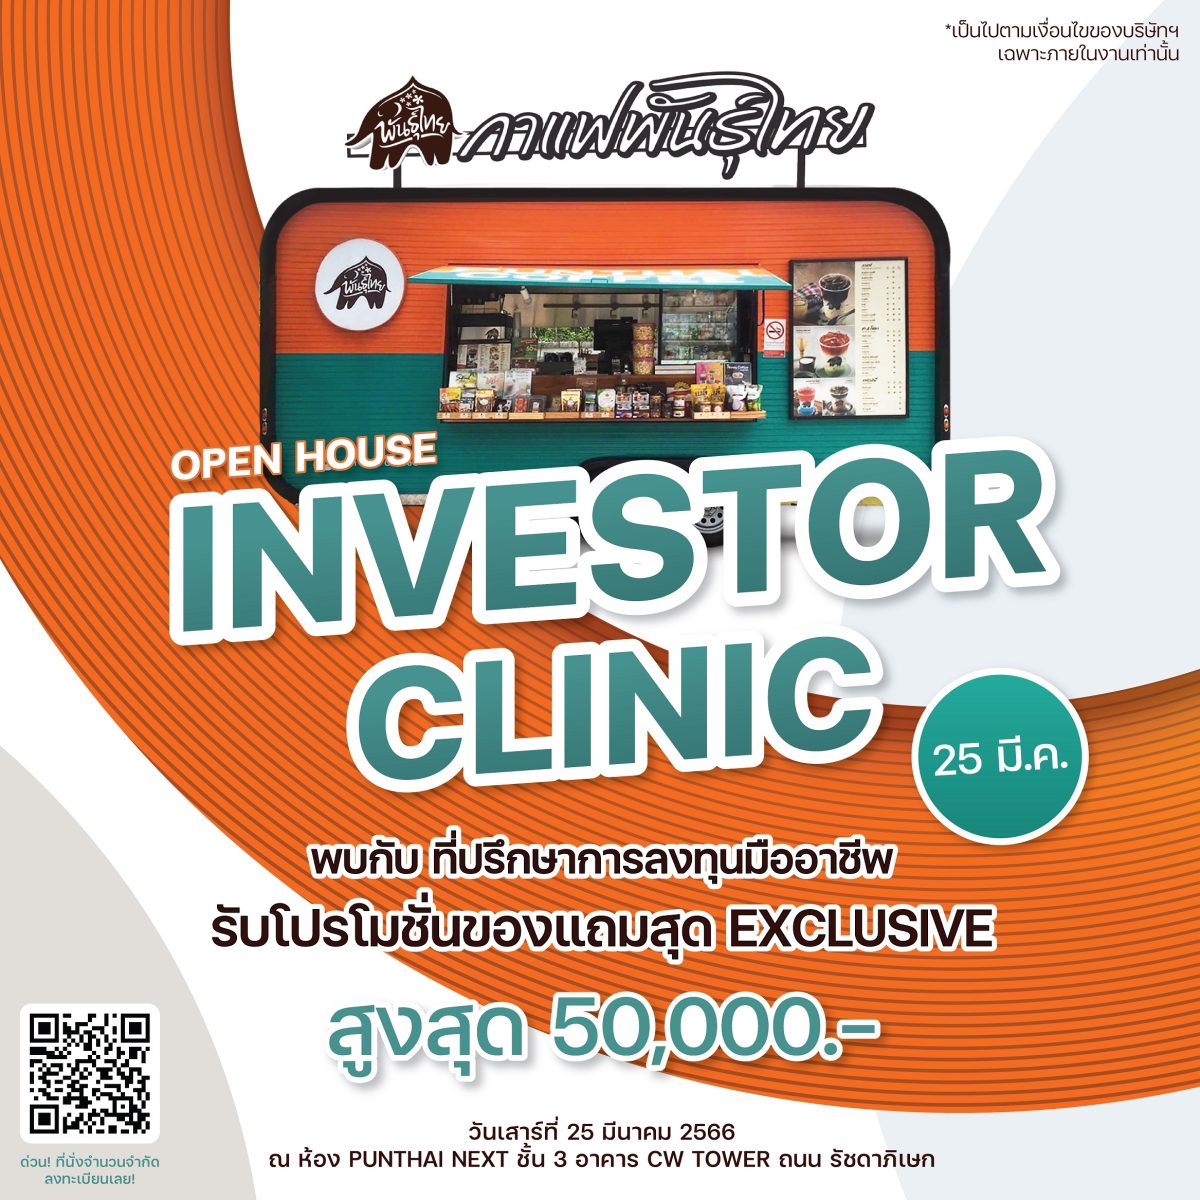 กาแฟพันธุ์ไทย เปิดบ้านต้อนรับเพื่อนแฟรนไชส์ จัด Investor Clinic เผยเทคนิคบริหารธุรกิจให้ปัง !